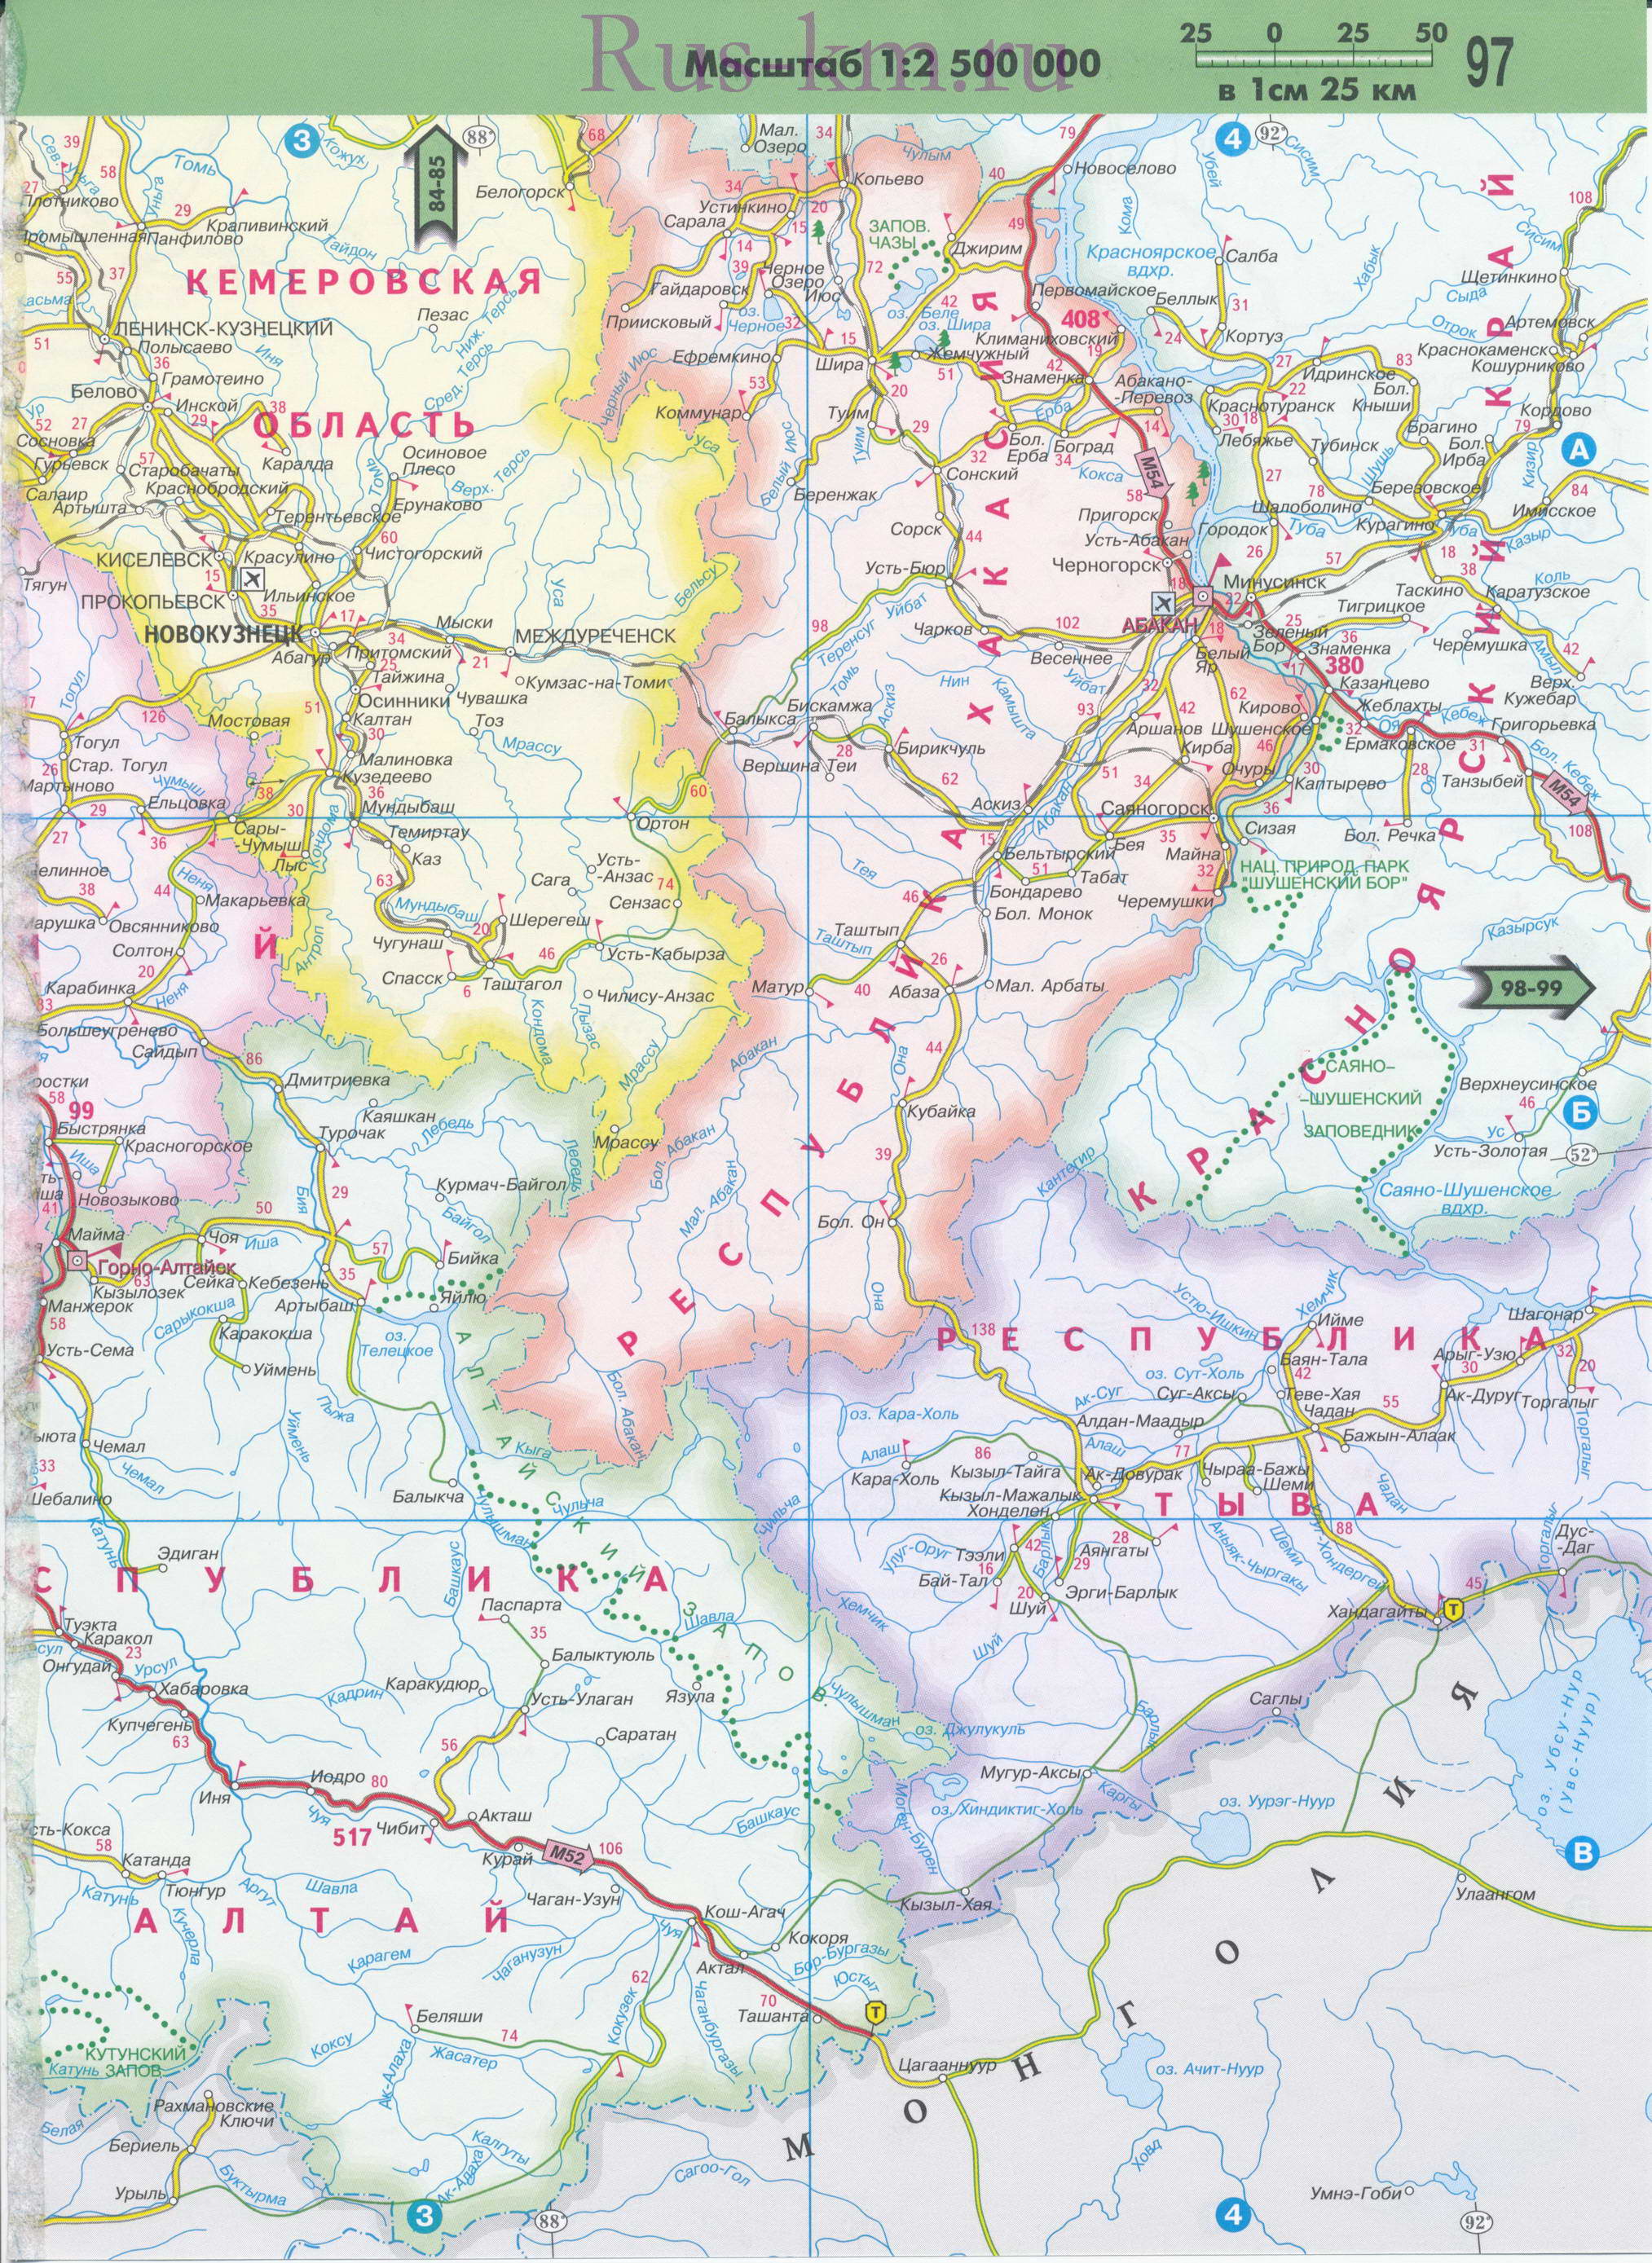 Карта Тывы. Автомобильная карта республики Тыва и соседних регионов Сибири, масштаб 1см:25км, A0 - 